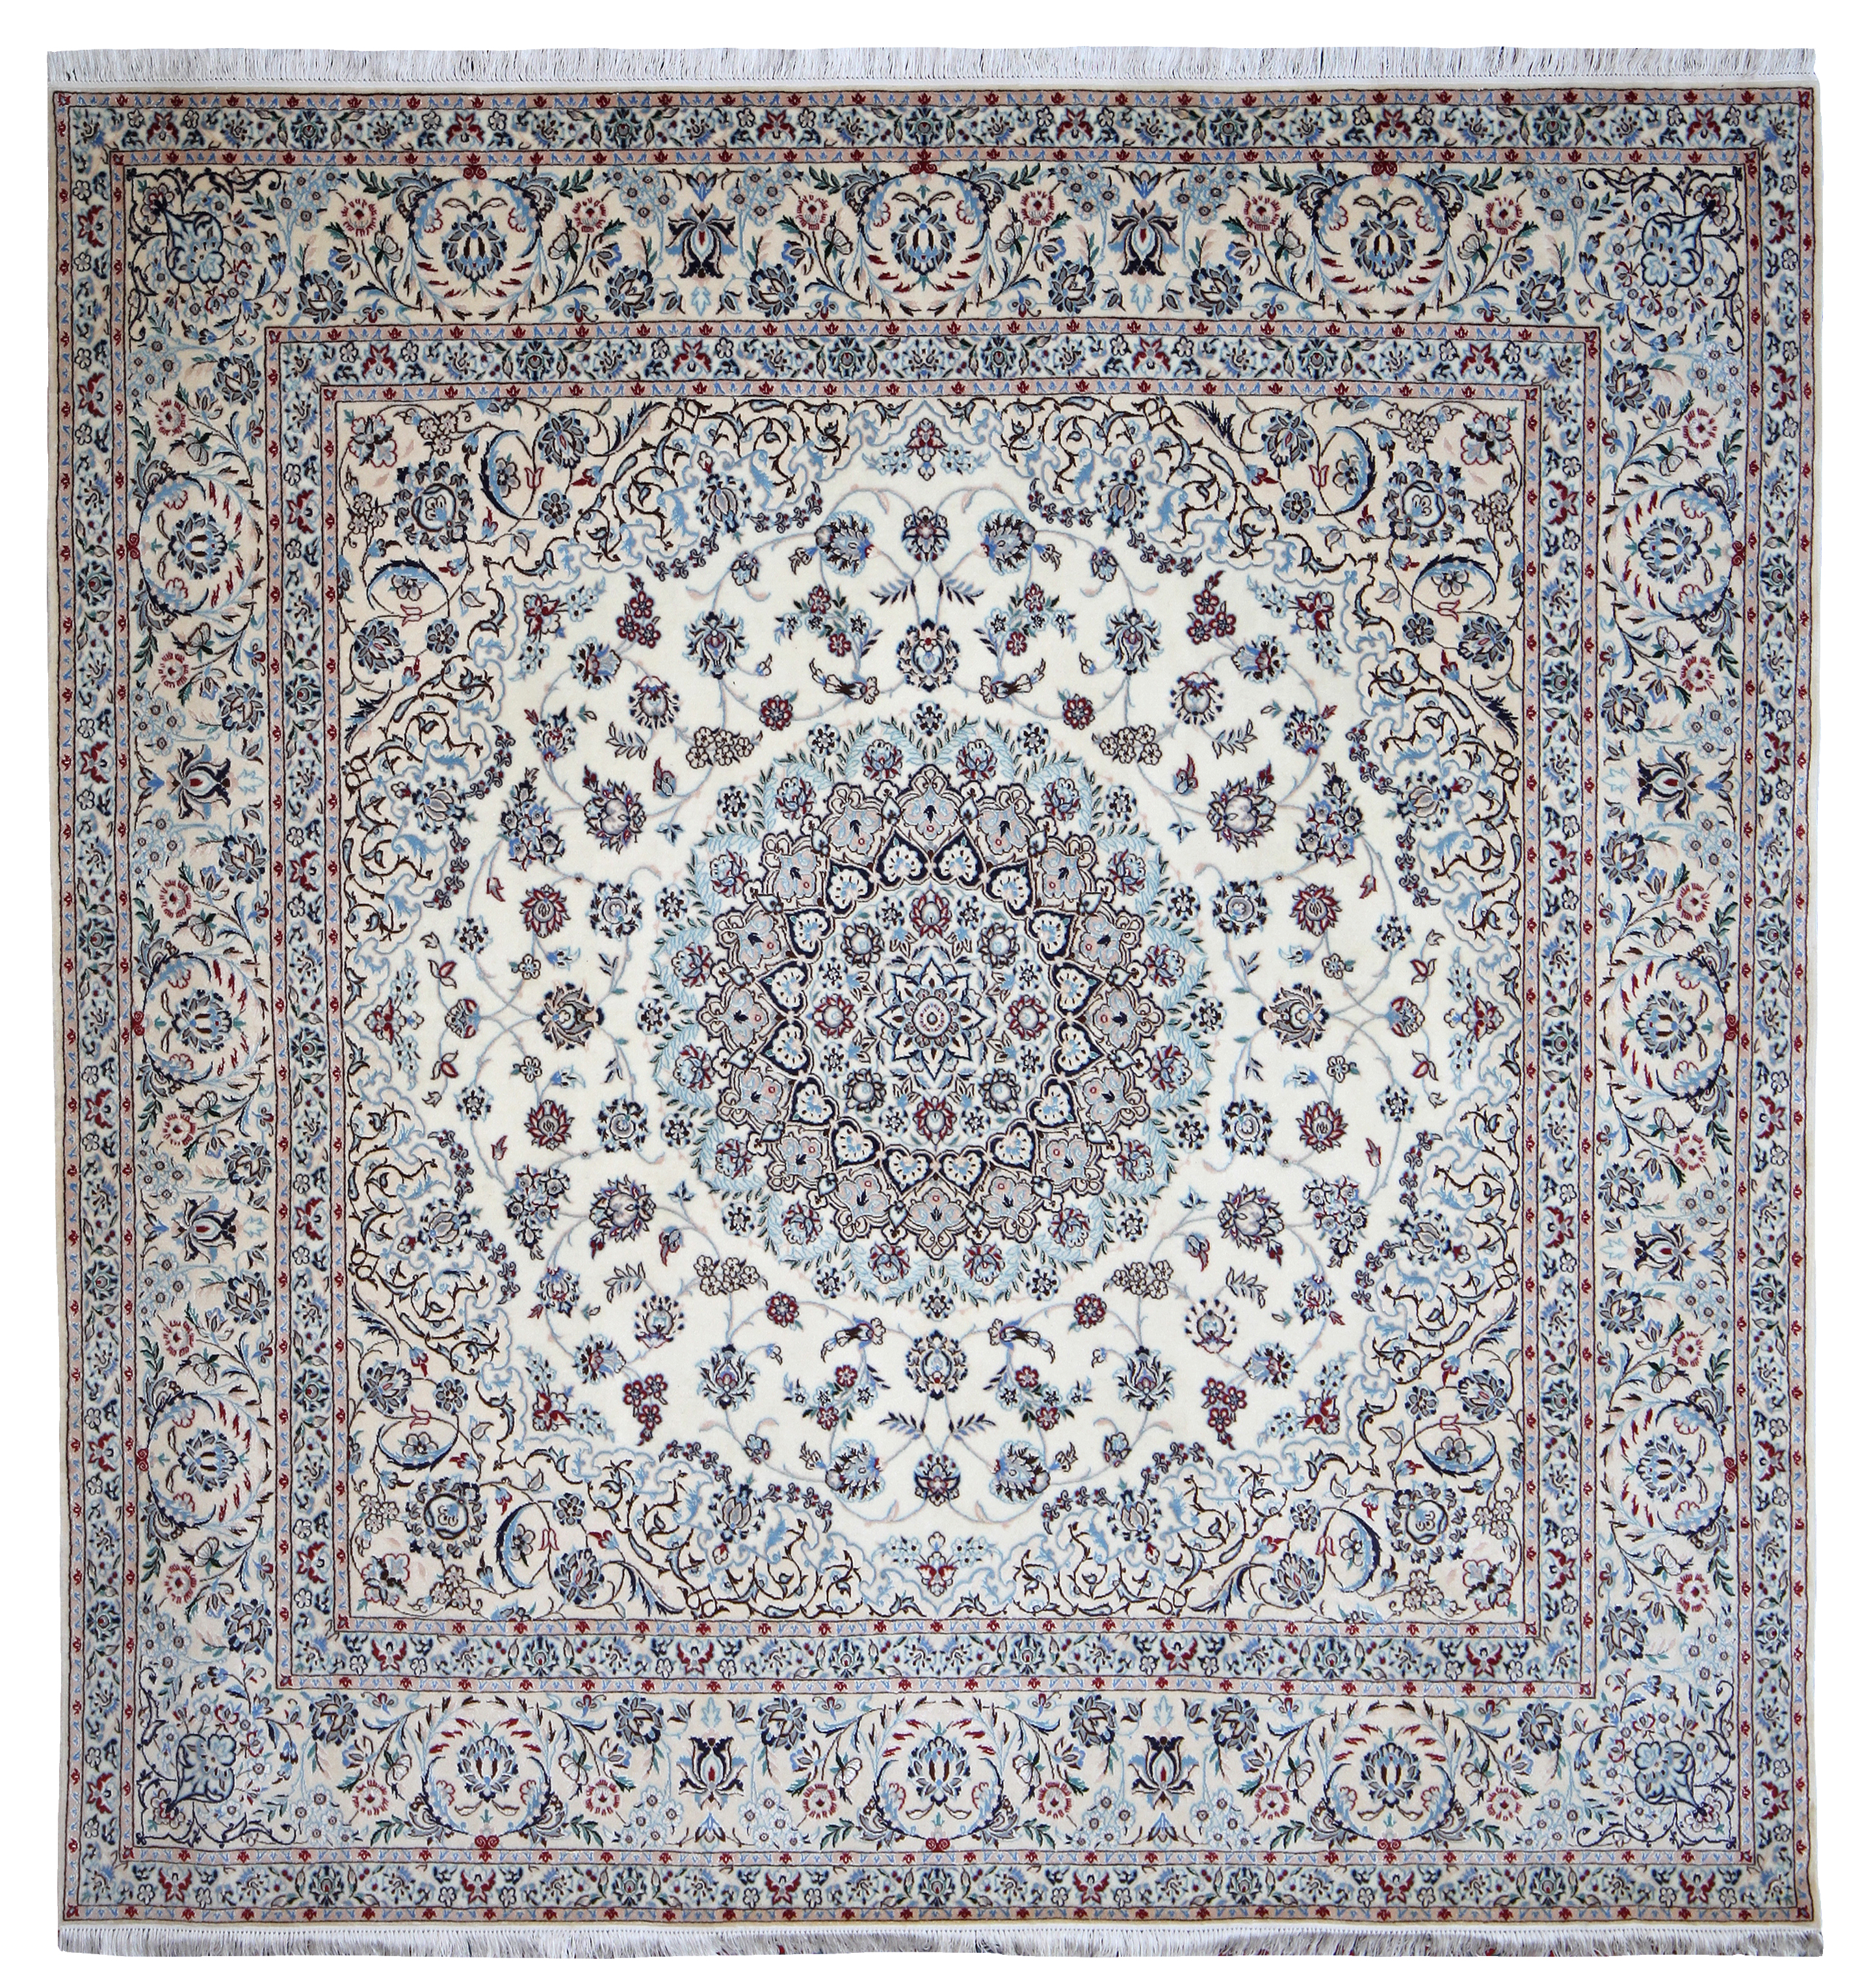 Square Nain Carpet With Silk Highlights Farnham Antique Carpets